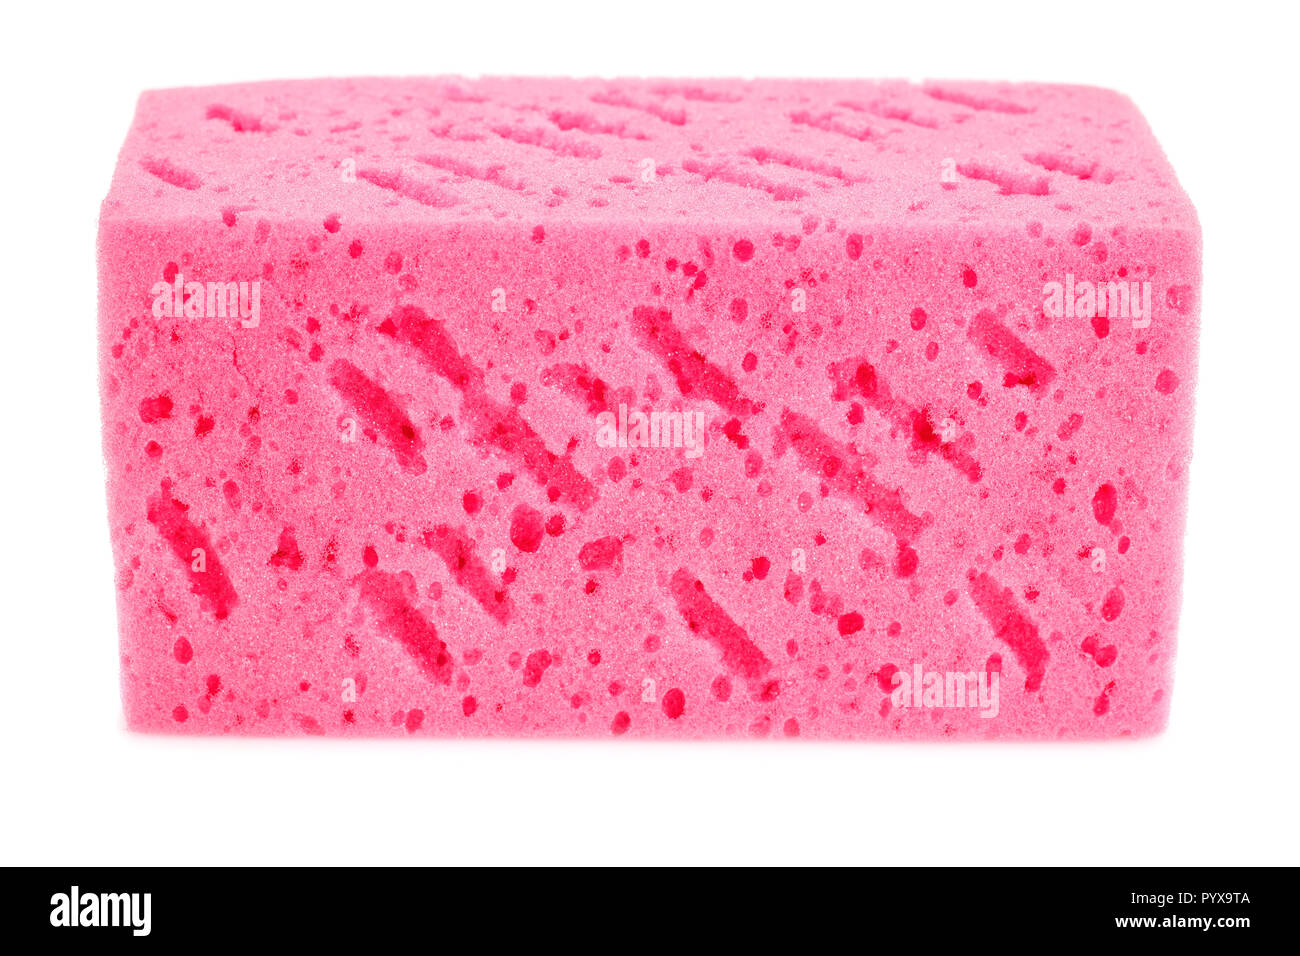 65,570 Pink Sponge Images, Stock Photos, 3D objects, & Vectors